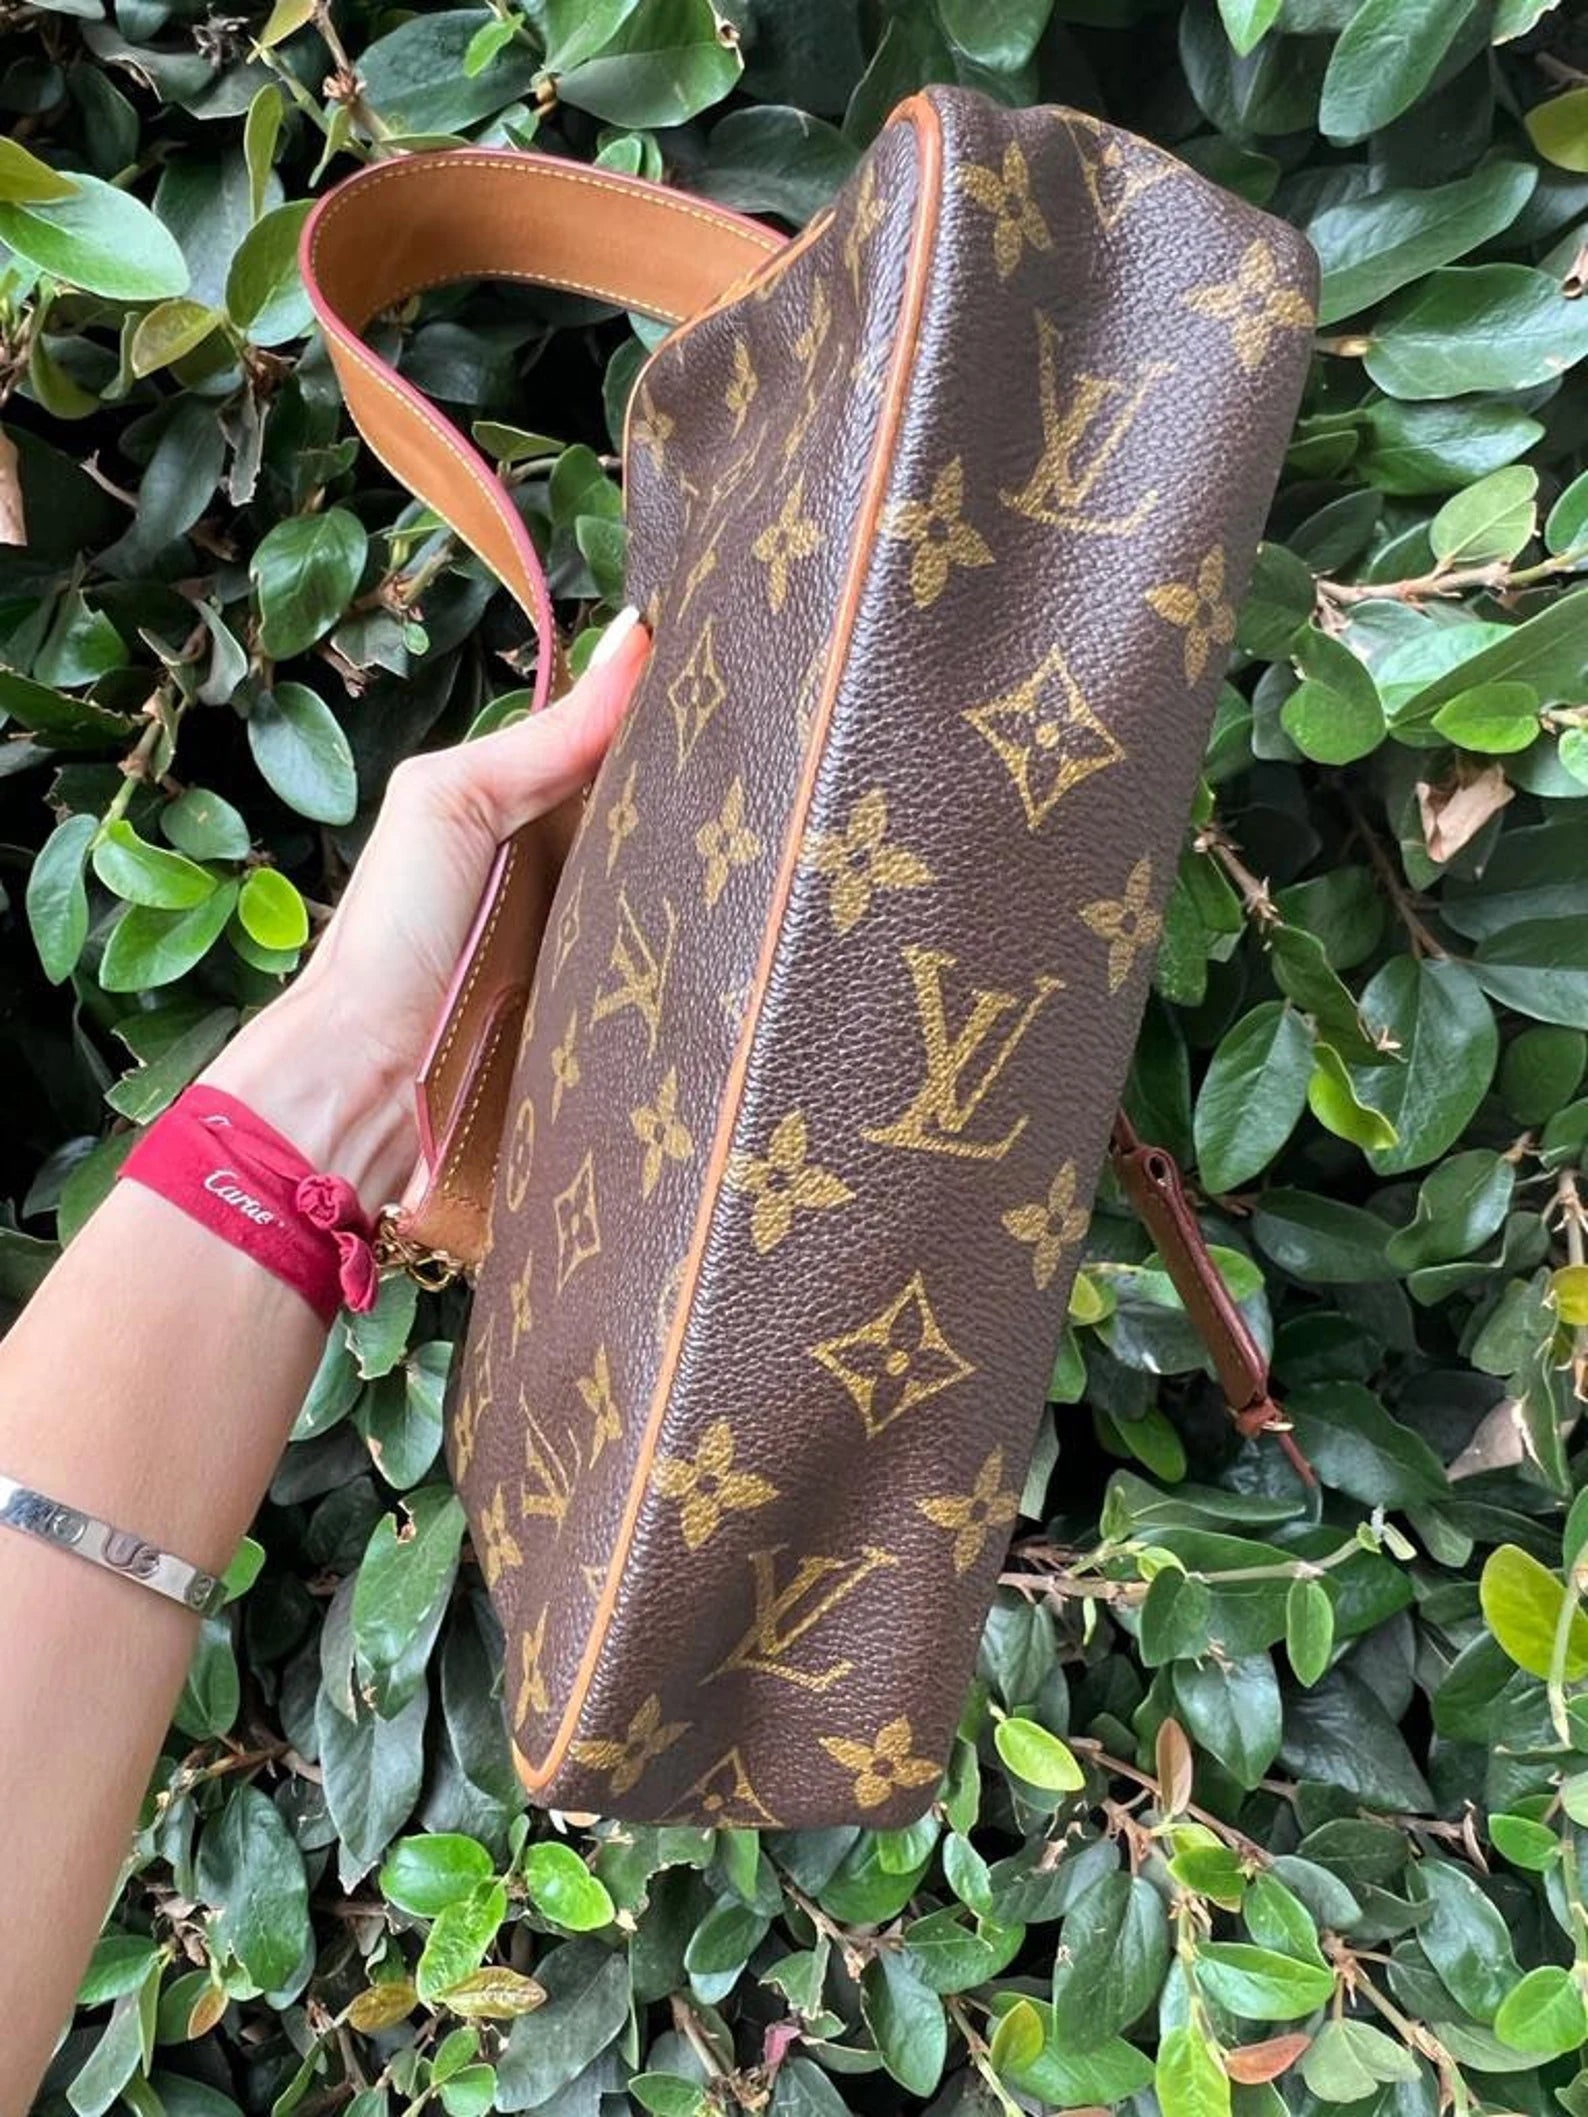 Louis Vuitton, Bags, Louis Vuitton Compiegne 28 Shouldercrossbody Bag